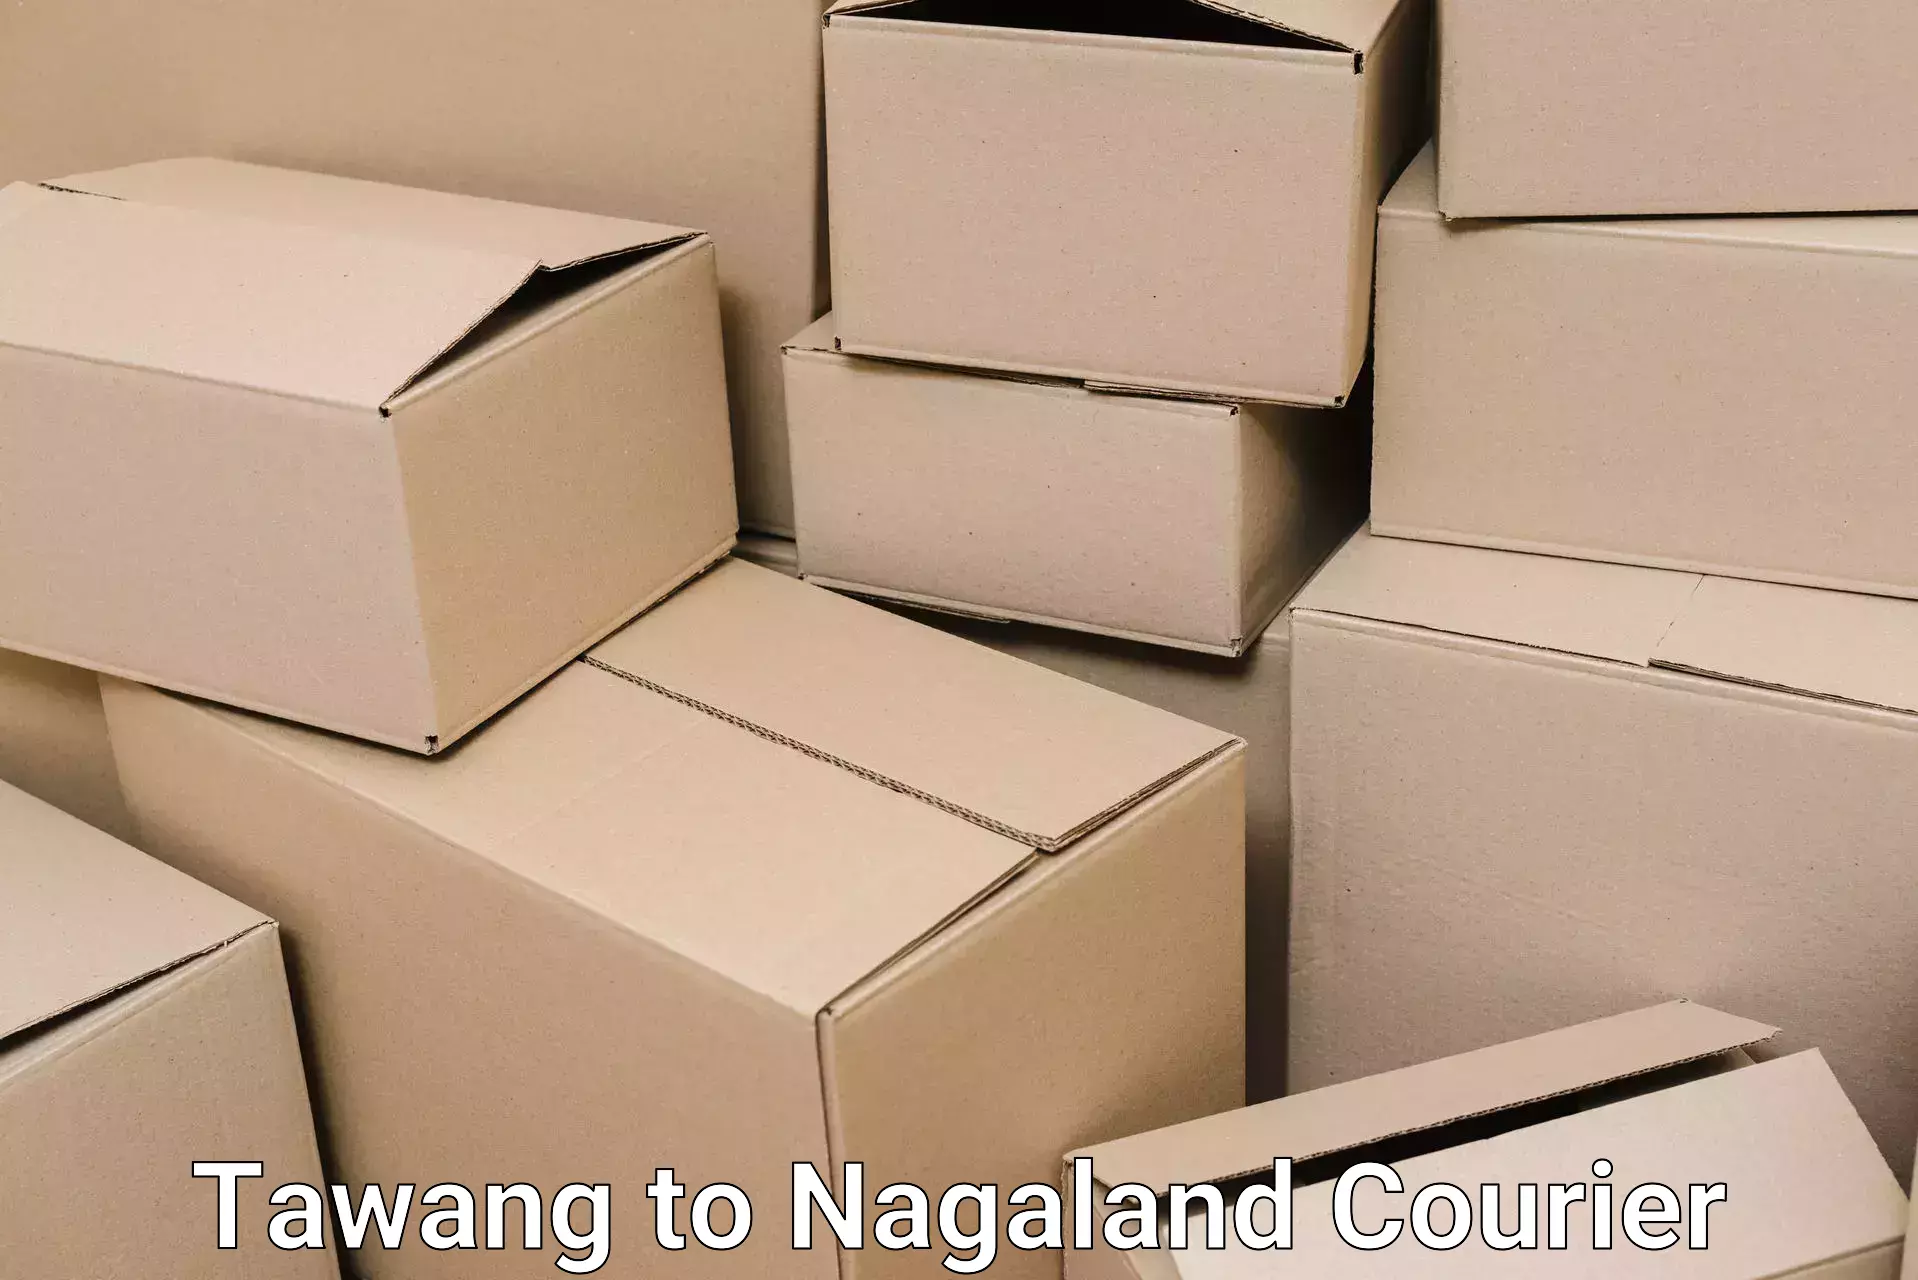 Residential moving experts Tawang to Nagaland